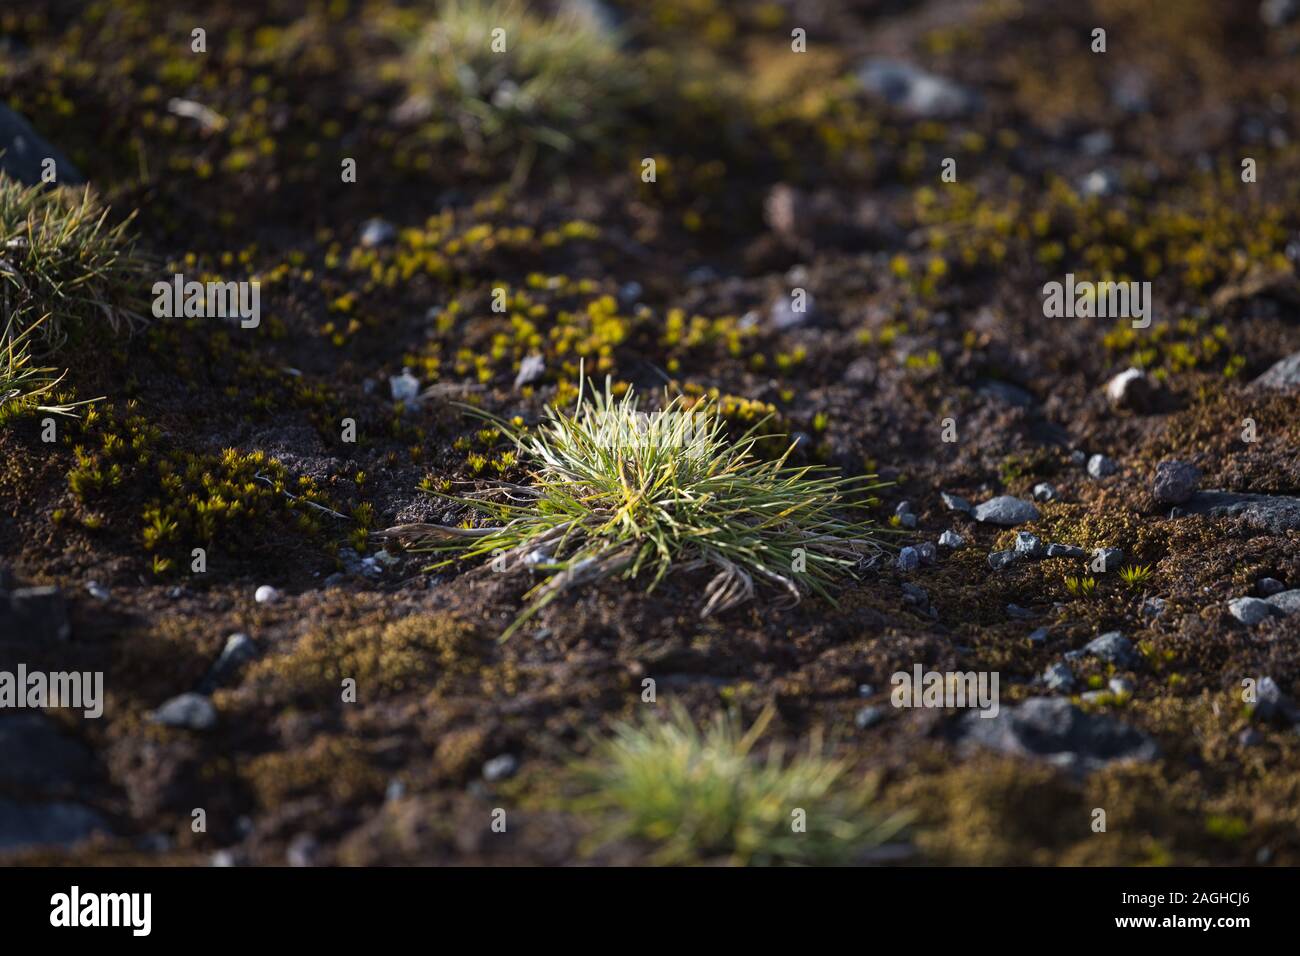 Macrophoto der Deschampsia antarctica, die Antarktis Haar Gras, eine von  zwei blühende Pflanzen, die in der Antarktis Stockfotografie - Alamy